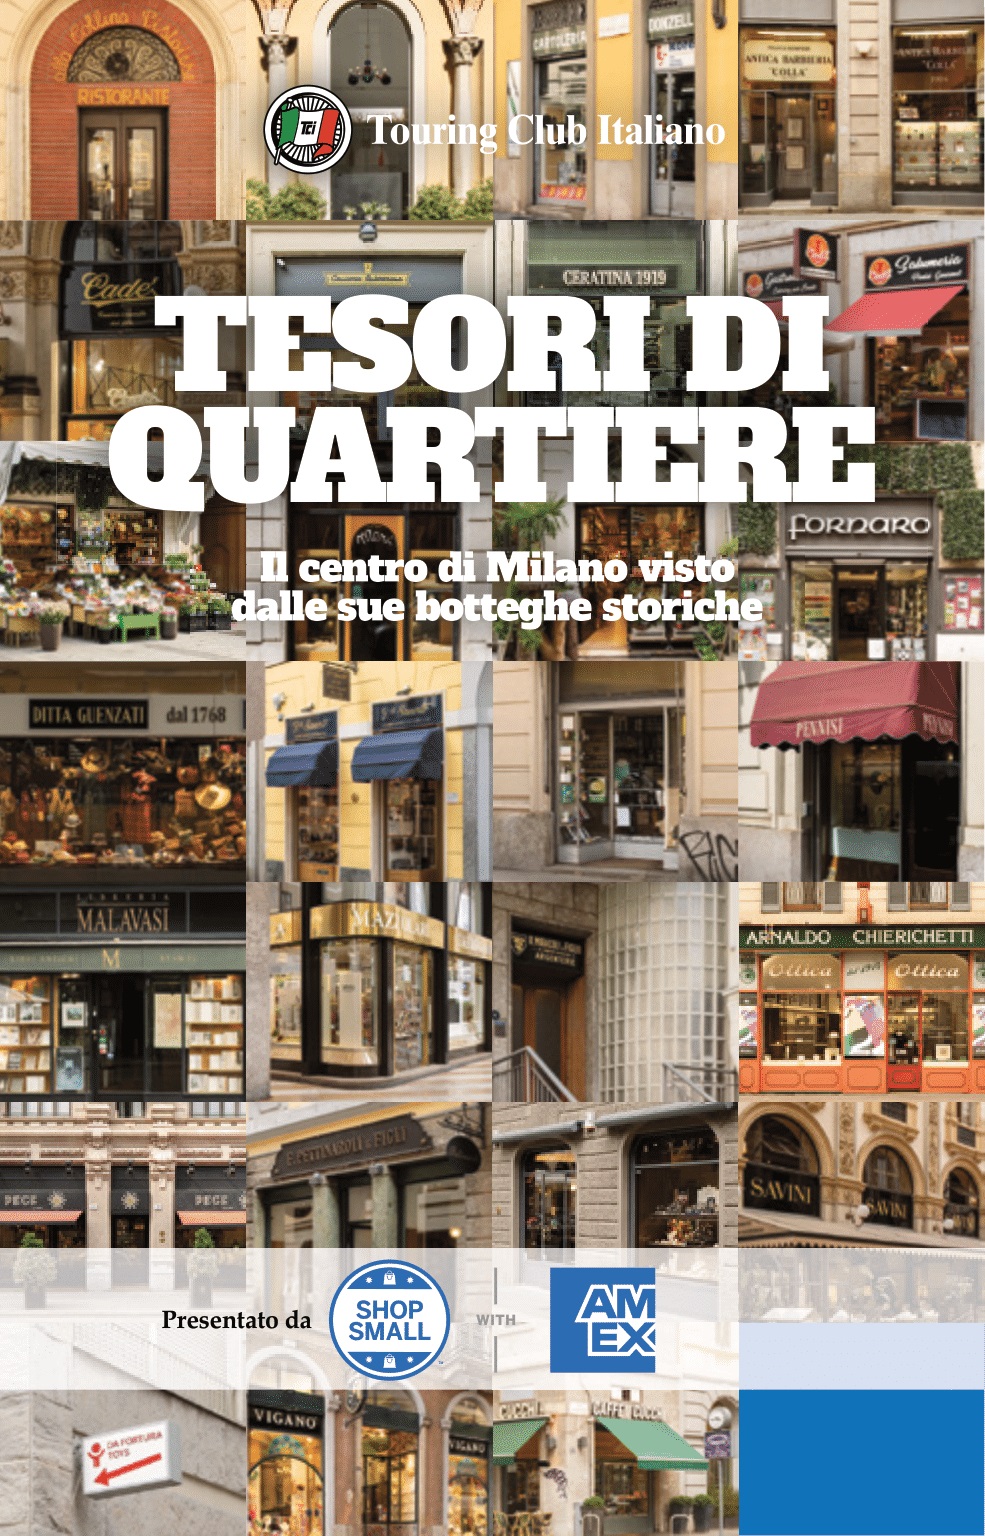 American Express presenta “Tesori di Quartiere”, una nuova guida alle botteghe storiche nel cuore di Milano, in collaborazione con Confesercenti